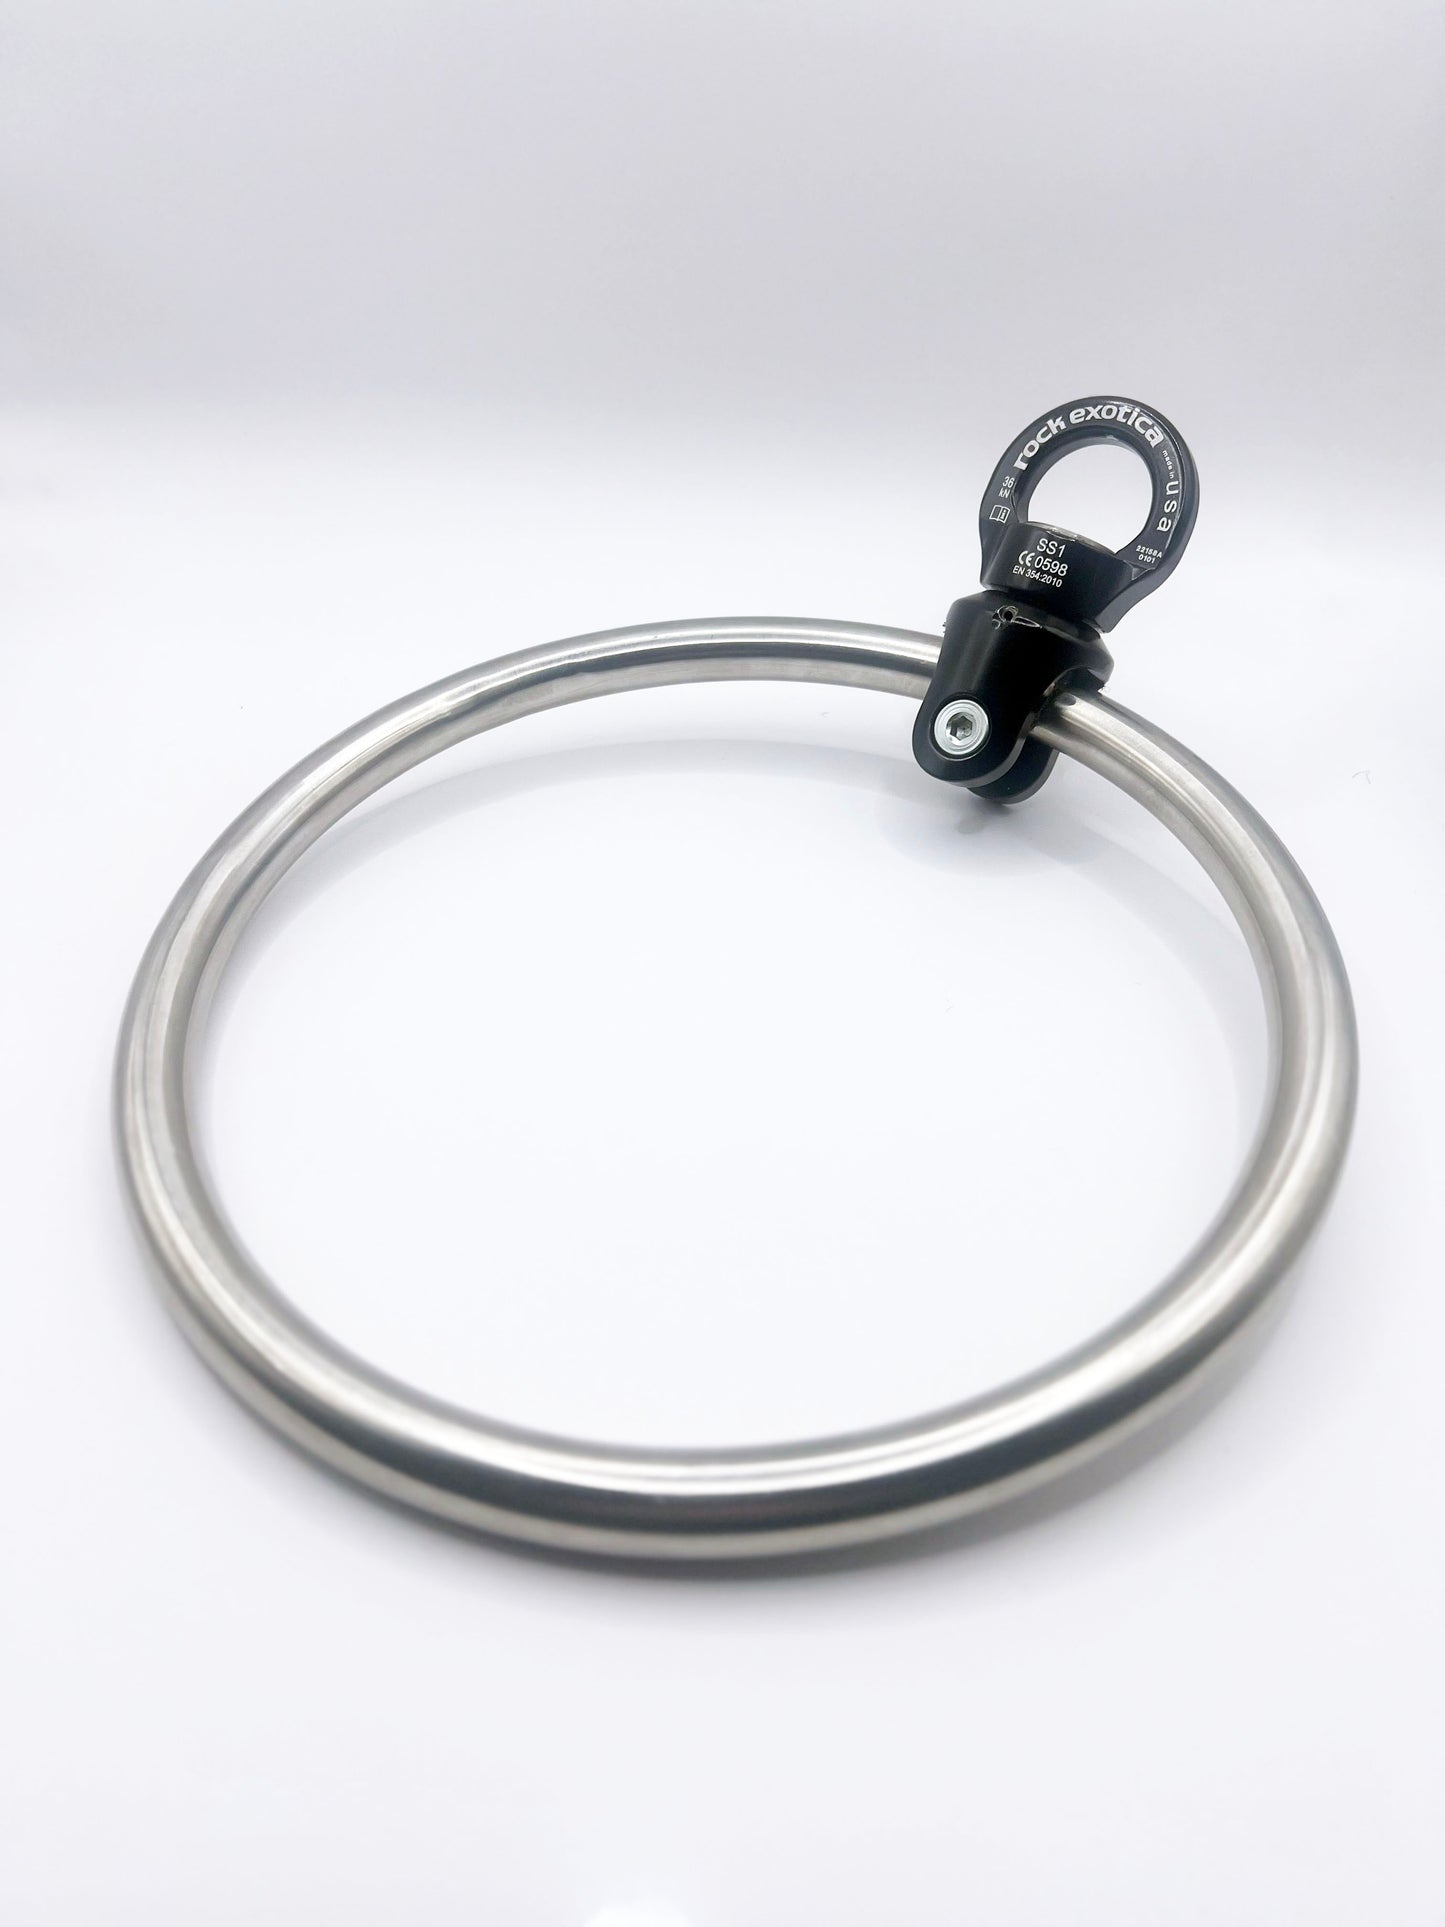 Uptight Products Shibari Ring & Swivel Kit